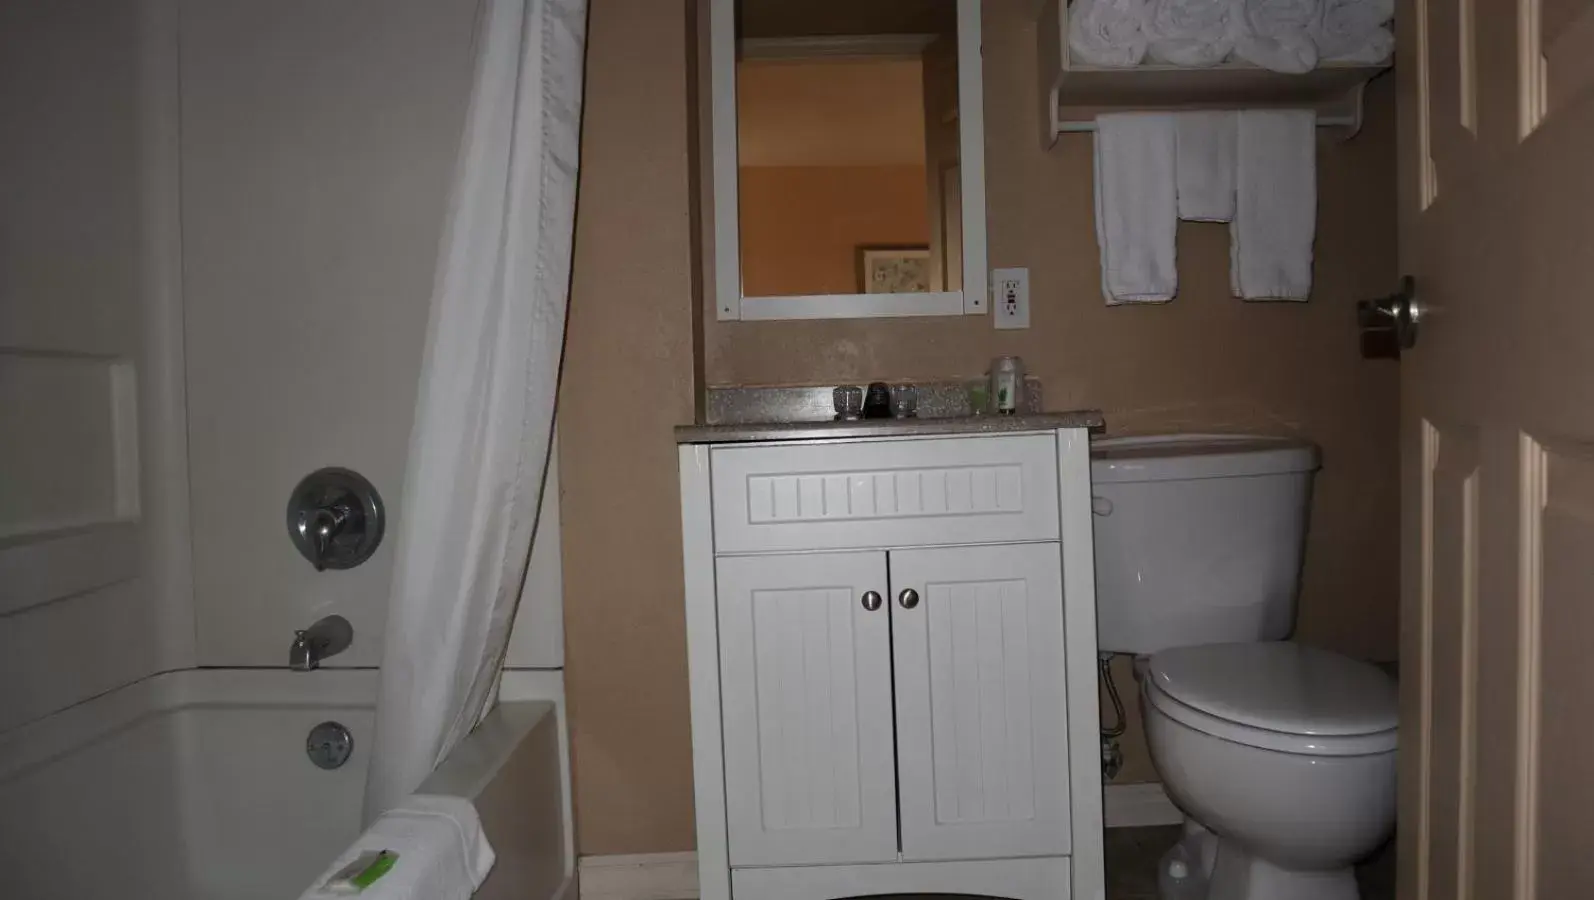 Toilet, Bathroom in Oregon Trail Inn